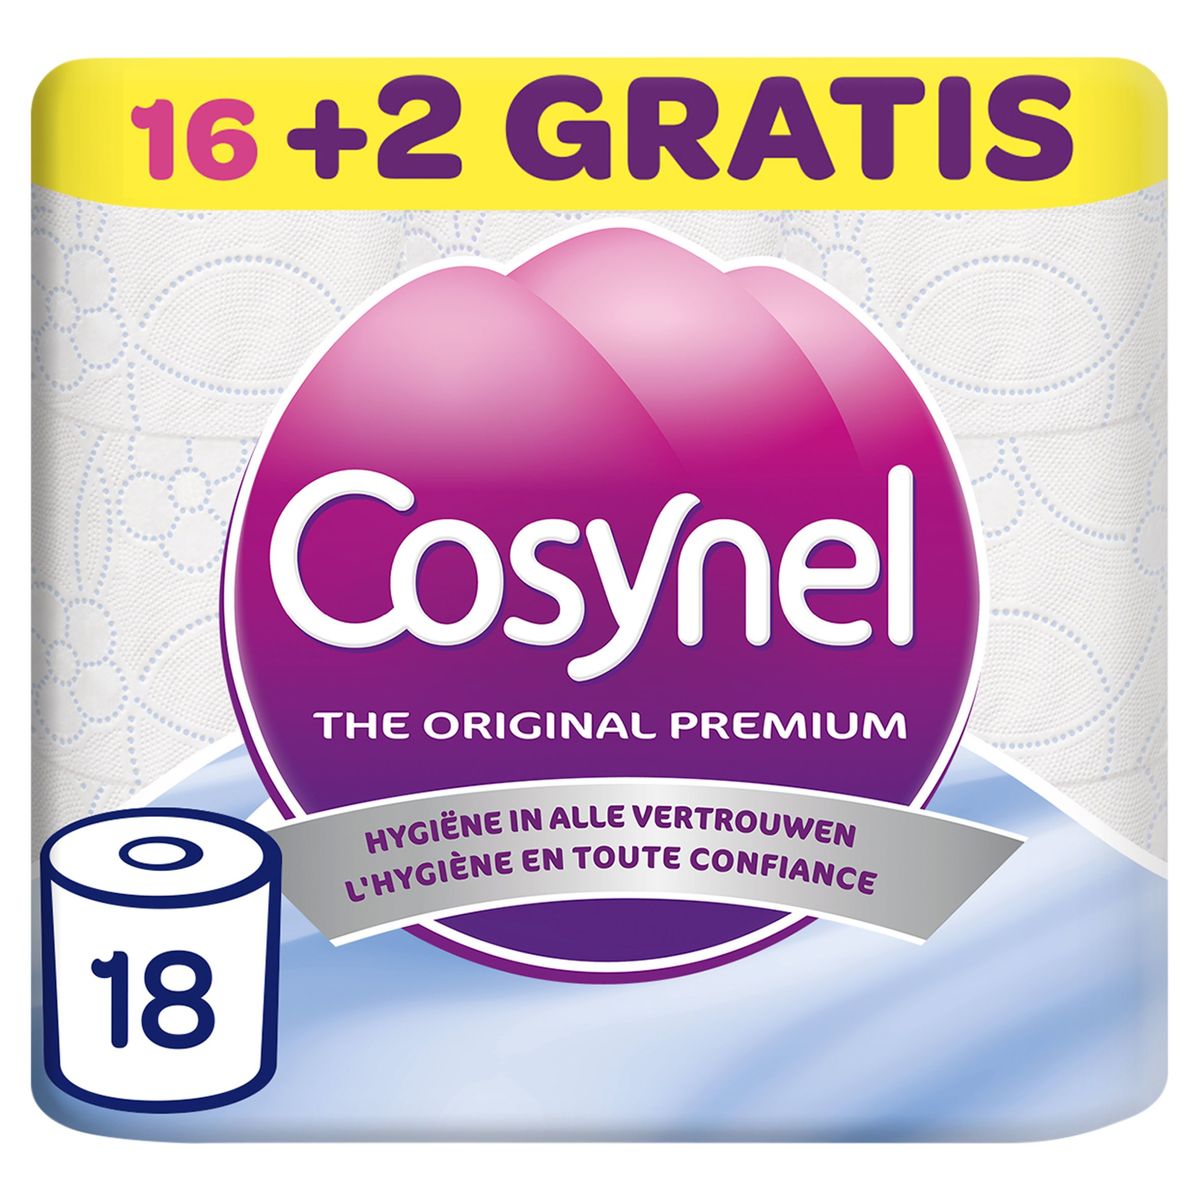 Cosynel The Original Premium Toiletpapier 3 Lagen 16+2 Gratis